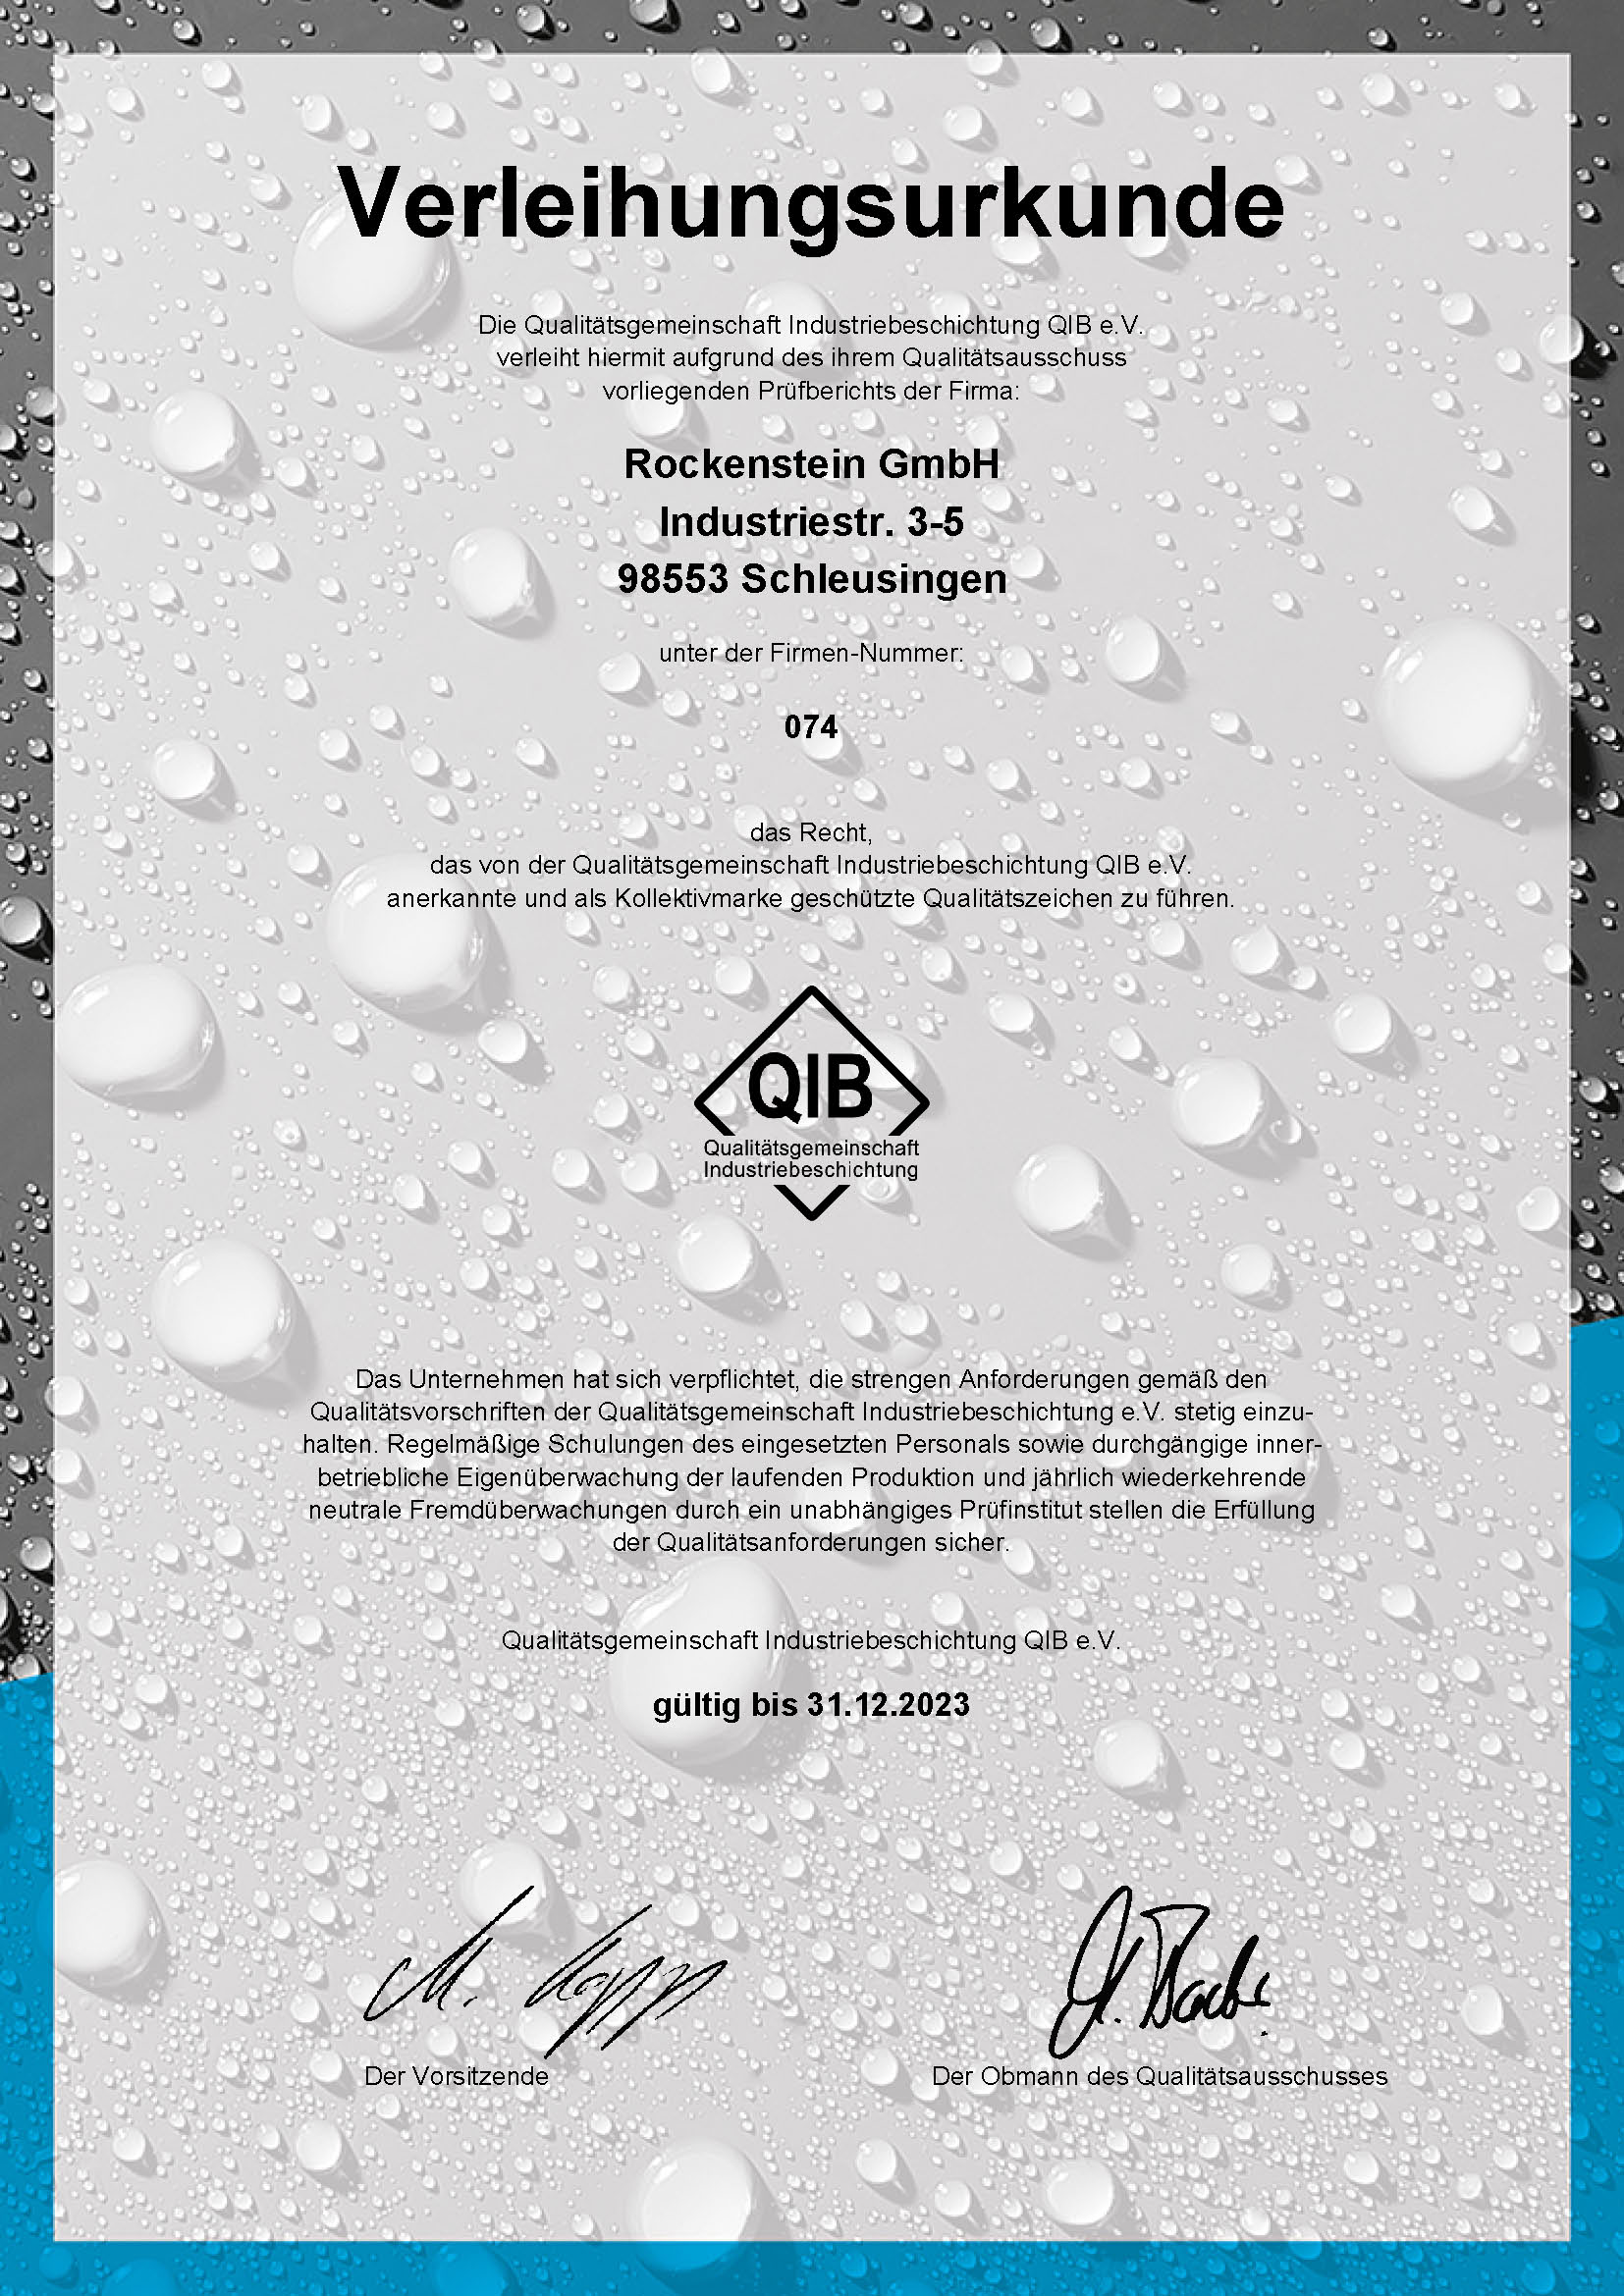 QIB Verleihungsurkunde für die Qualitätssicherung von Rockenstein